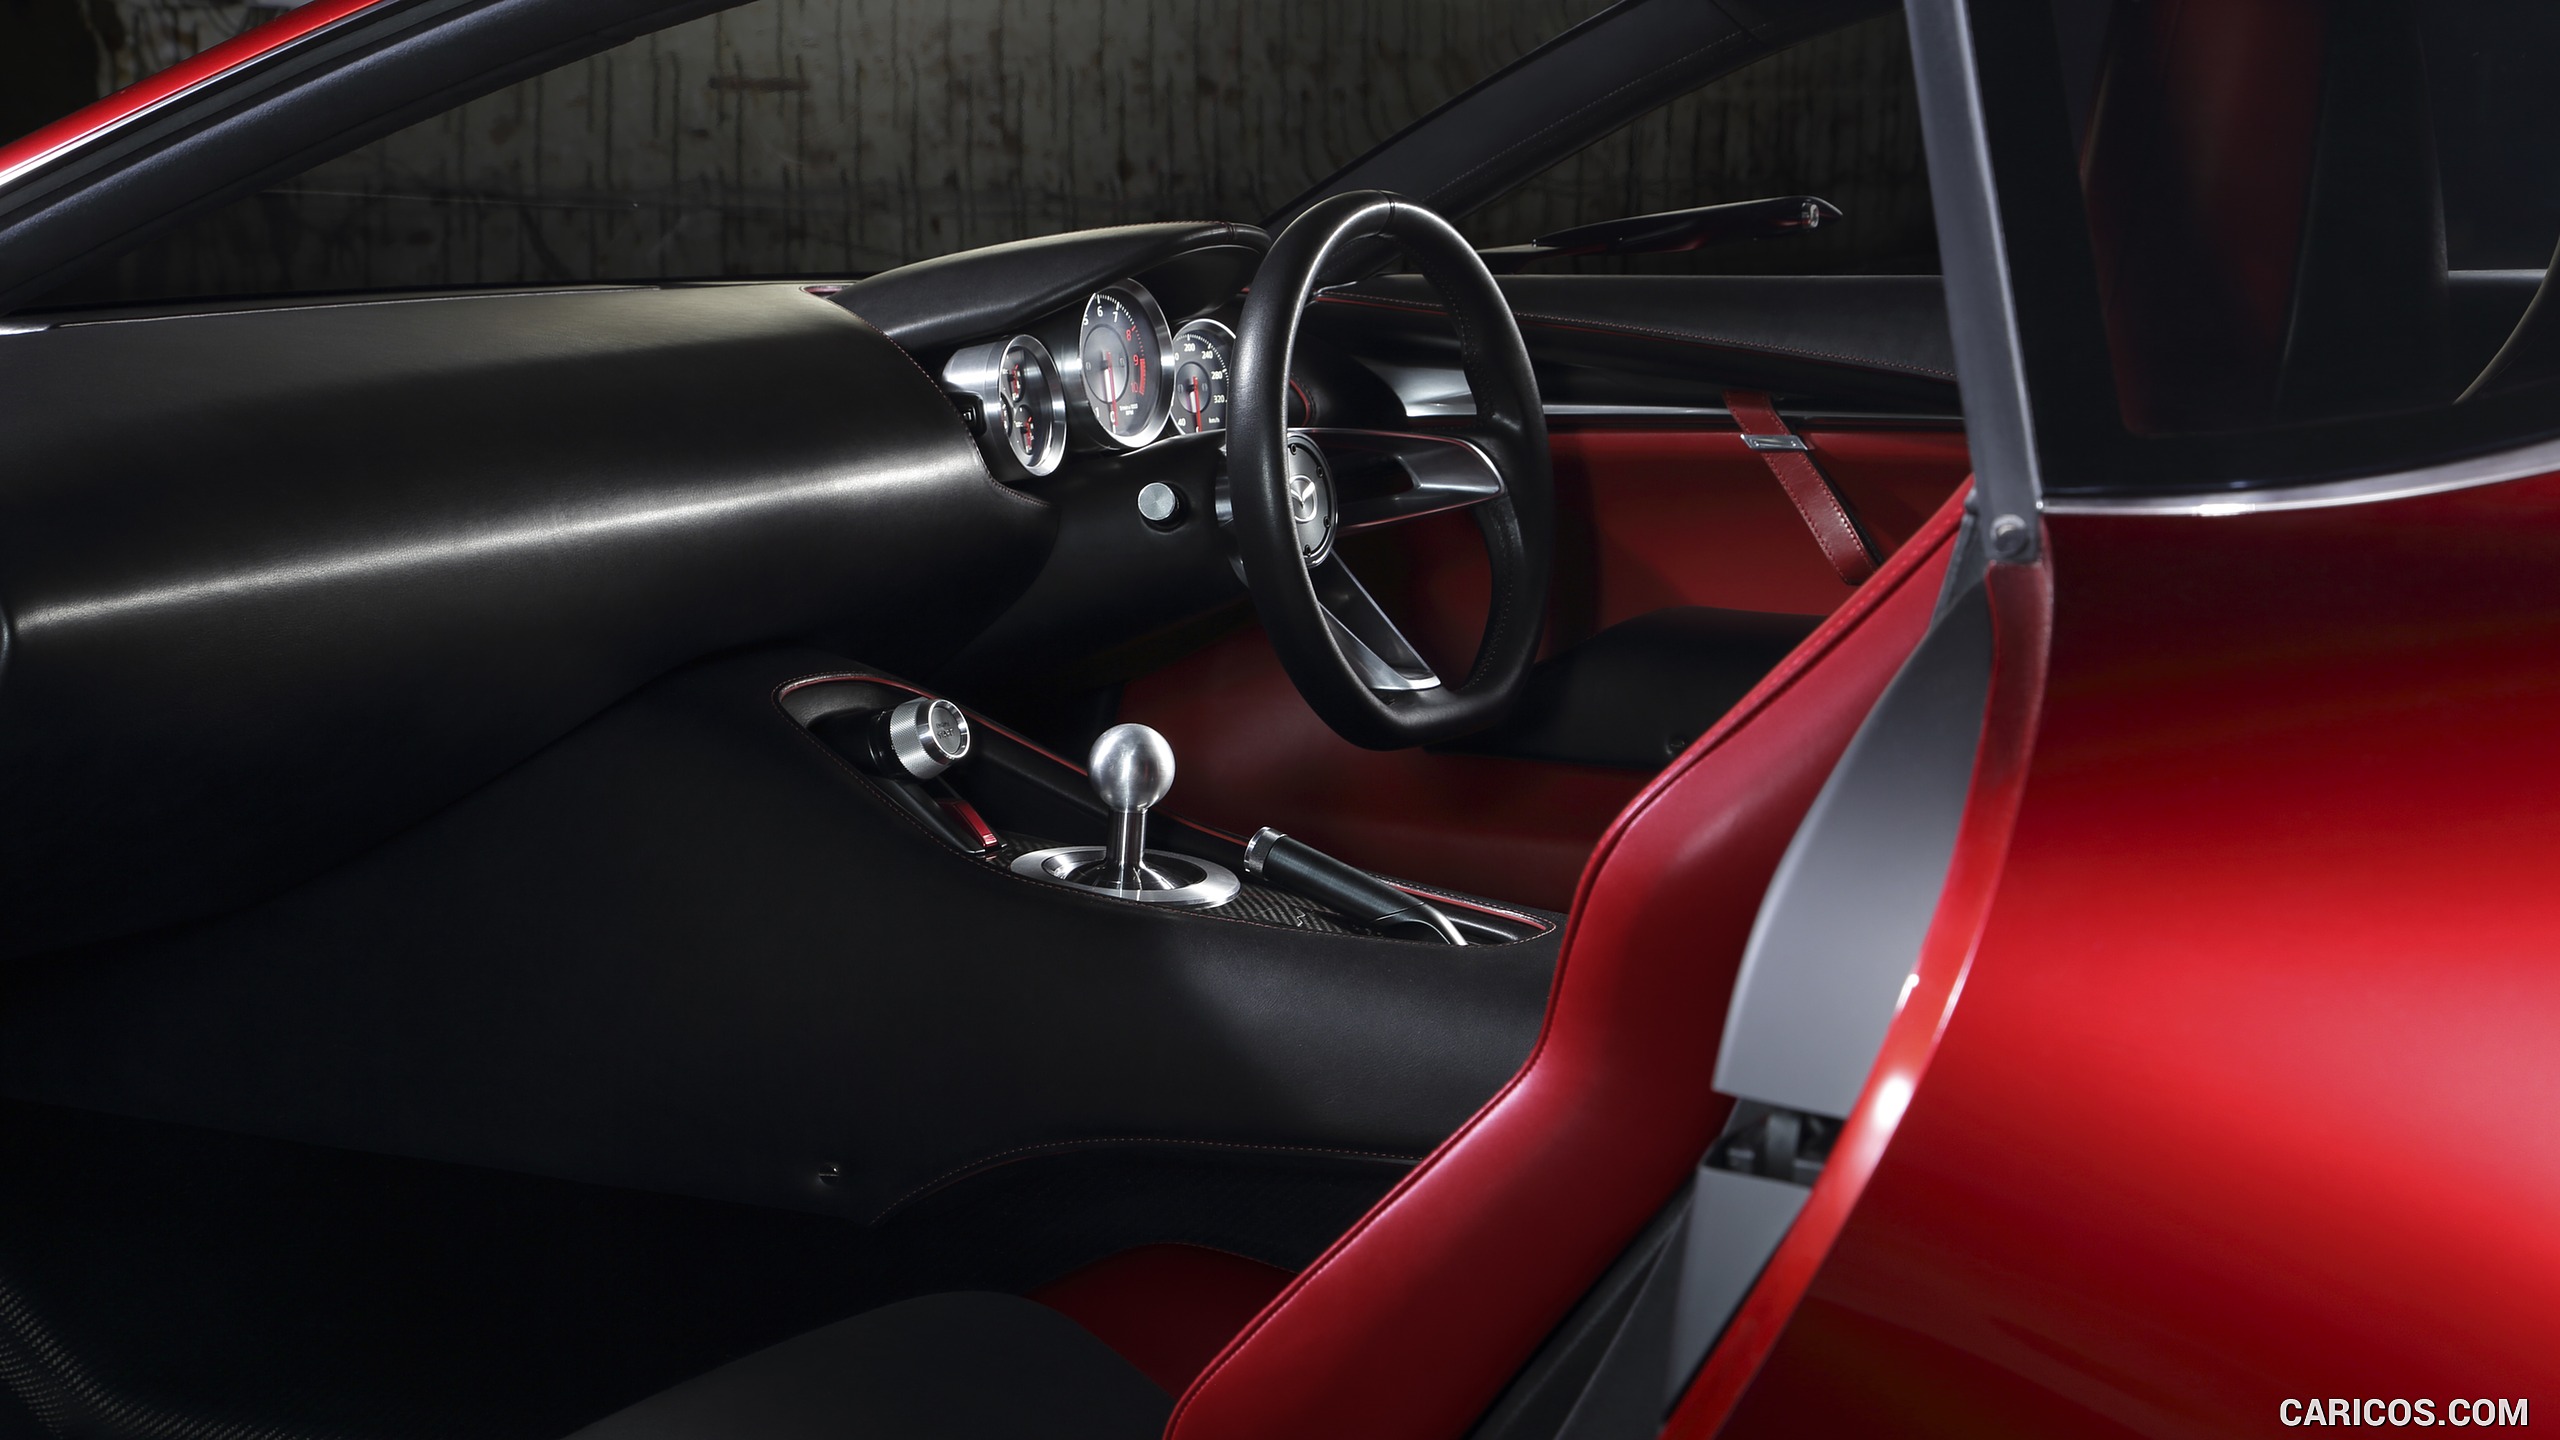 2015 Mazda RX-VISION Concept - Interior, #15 of 16